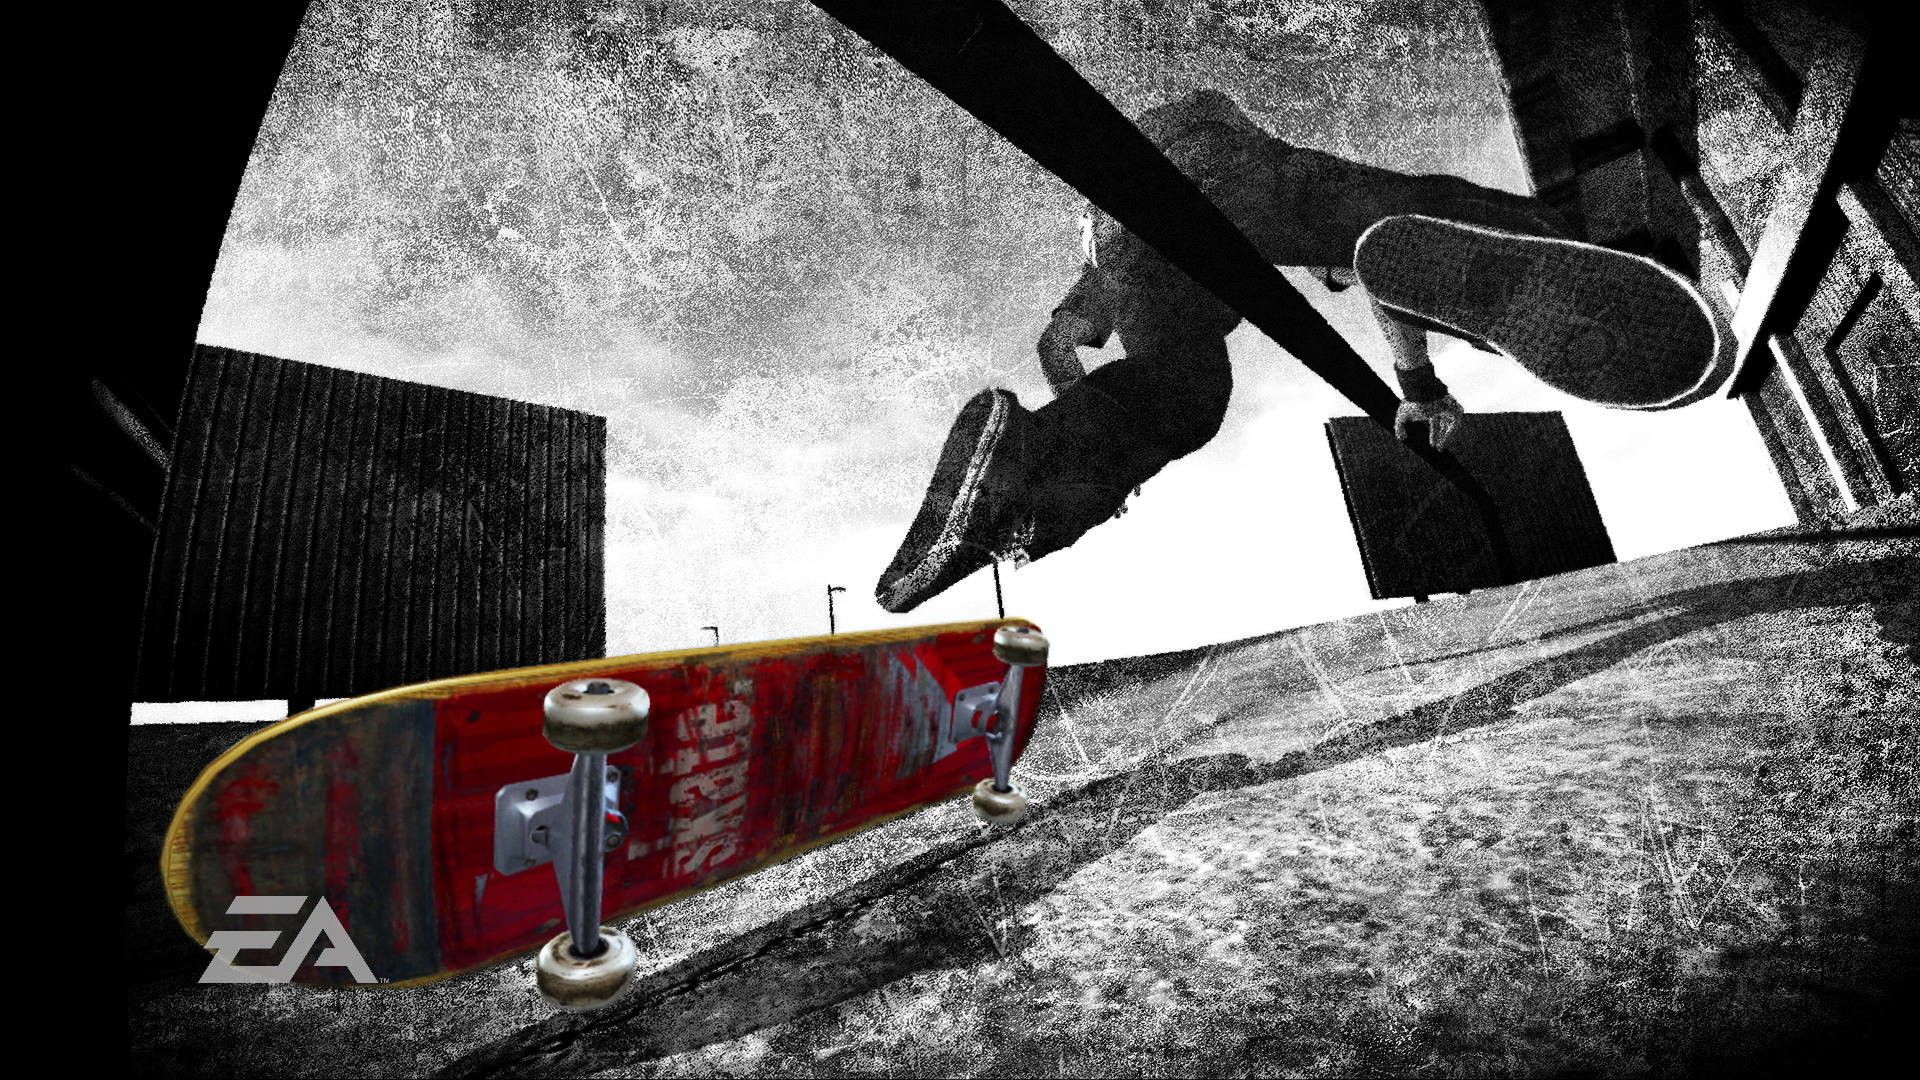 Skateboard Wallpaper for Desktop